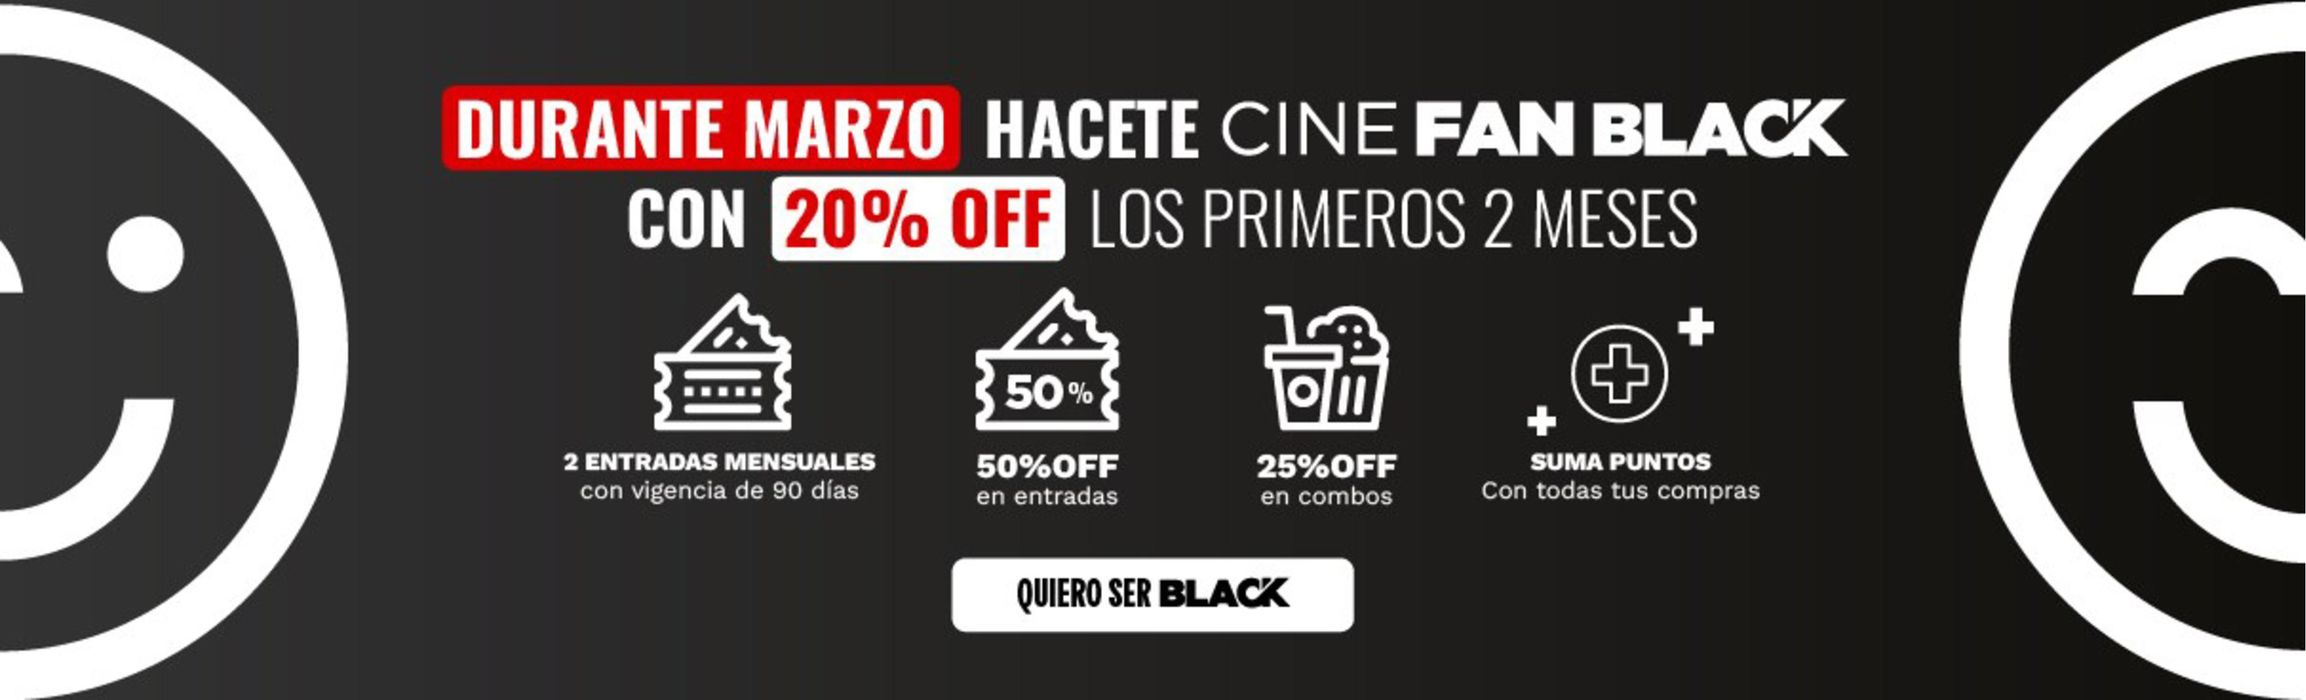 Catálogo Cinemark Hoyts en Avellaneda (Buenos Aires) | 50% off en entradas incluye todos los formatos | 21/3/2024 - 31/3/2024